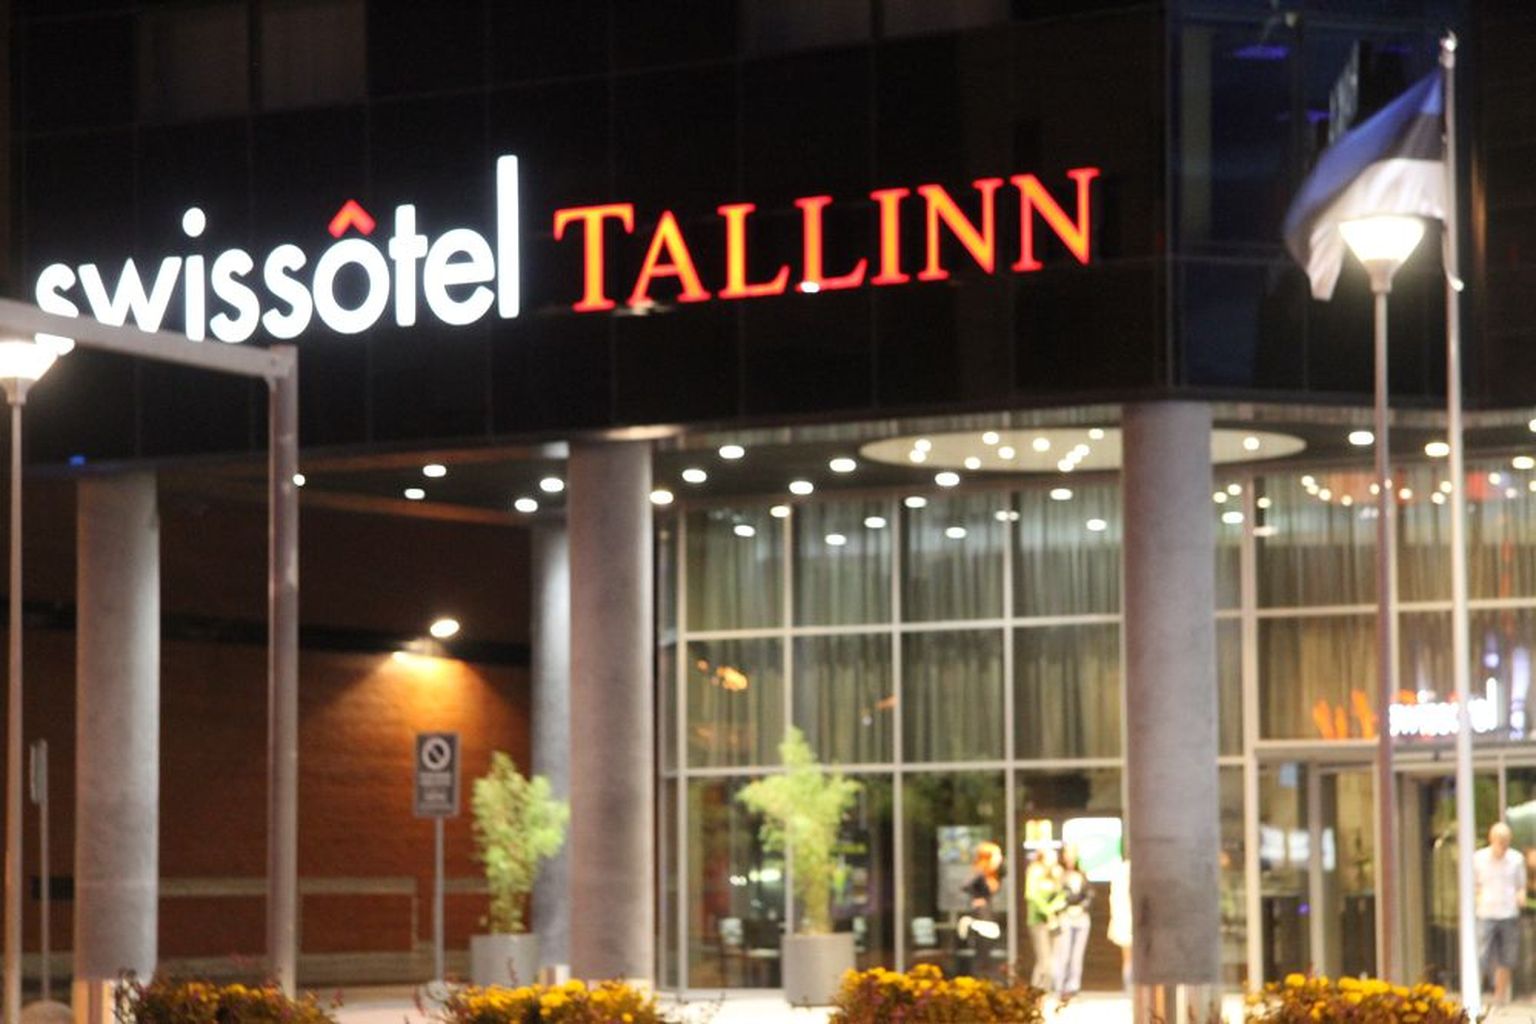 Swissotel Tallinn.